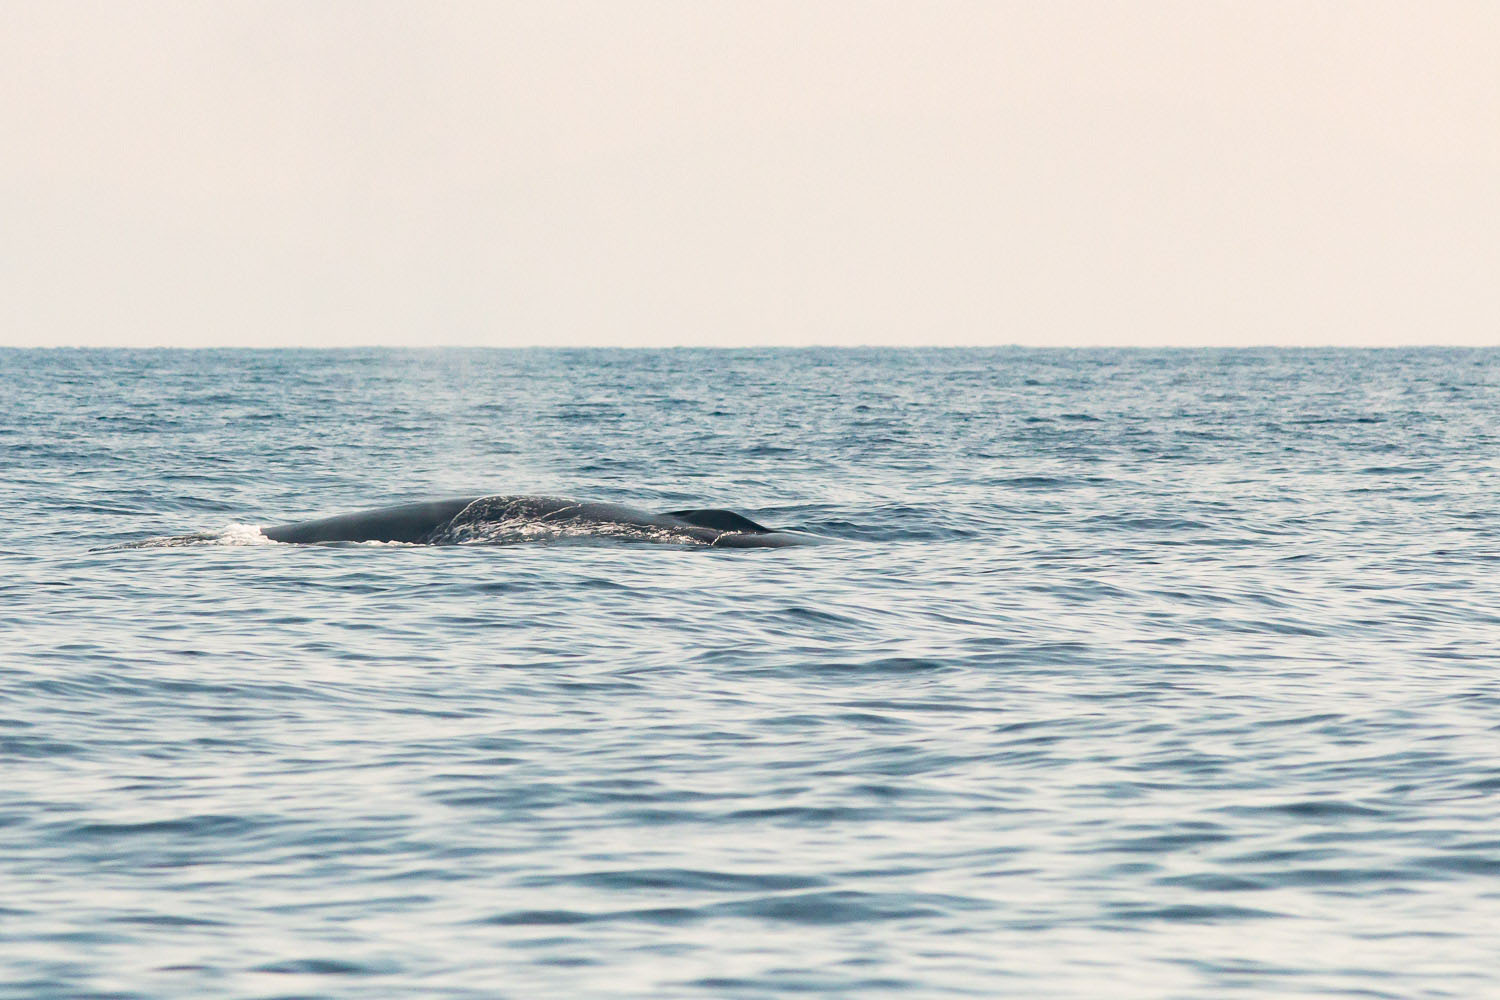 voyage scientifique - cetaces de mediterranee vers la corse a la voile 31